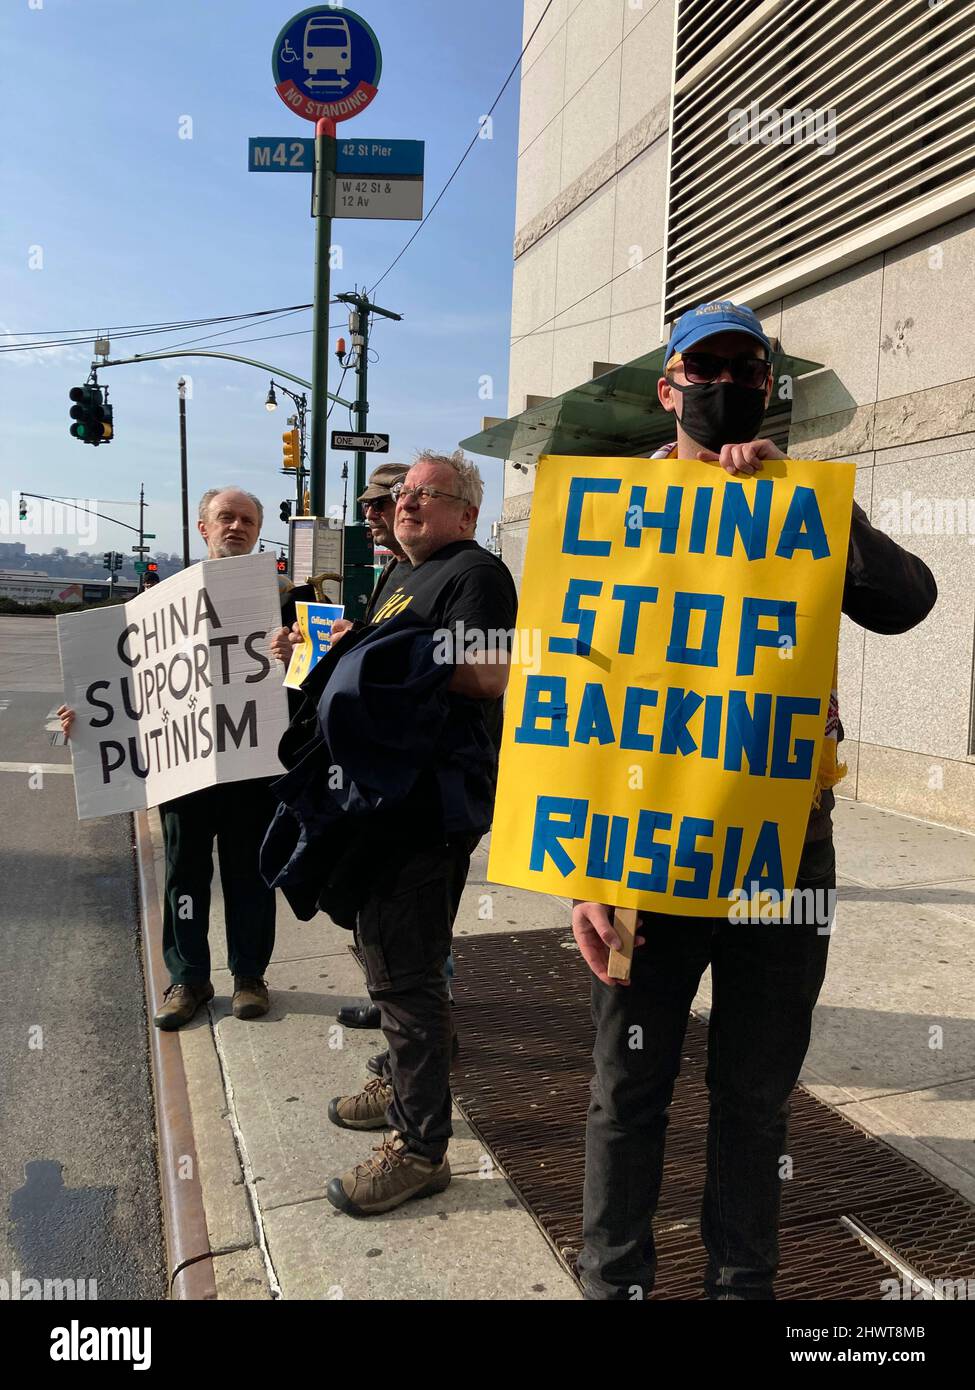 Les Ukrainiens-Américains et leurs partisans protestent devant le Consulat chinois de New York pour protester contre le manque d'implication de Chinas dans la sanction de la Russie, le dimanche 6 mars 2022. (© Frances M. Roberts) Banque D'Images